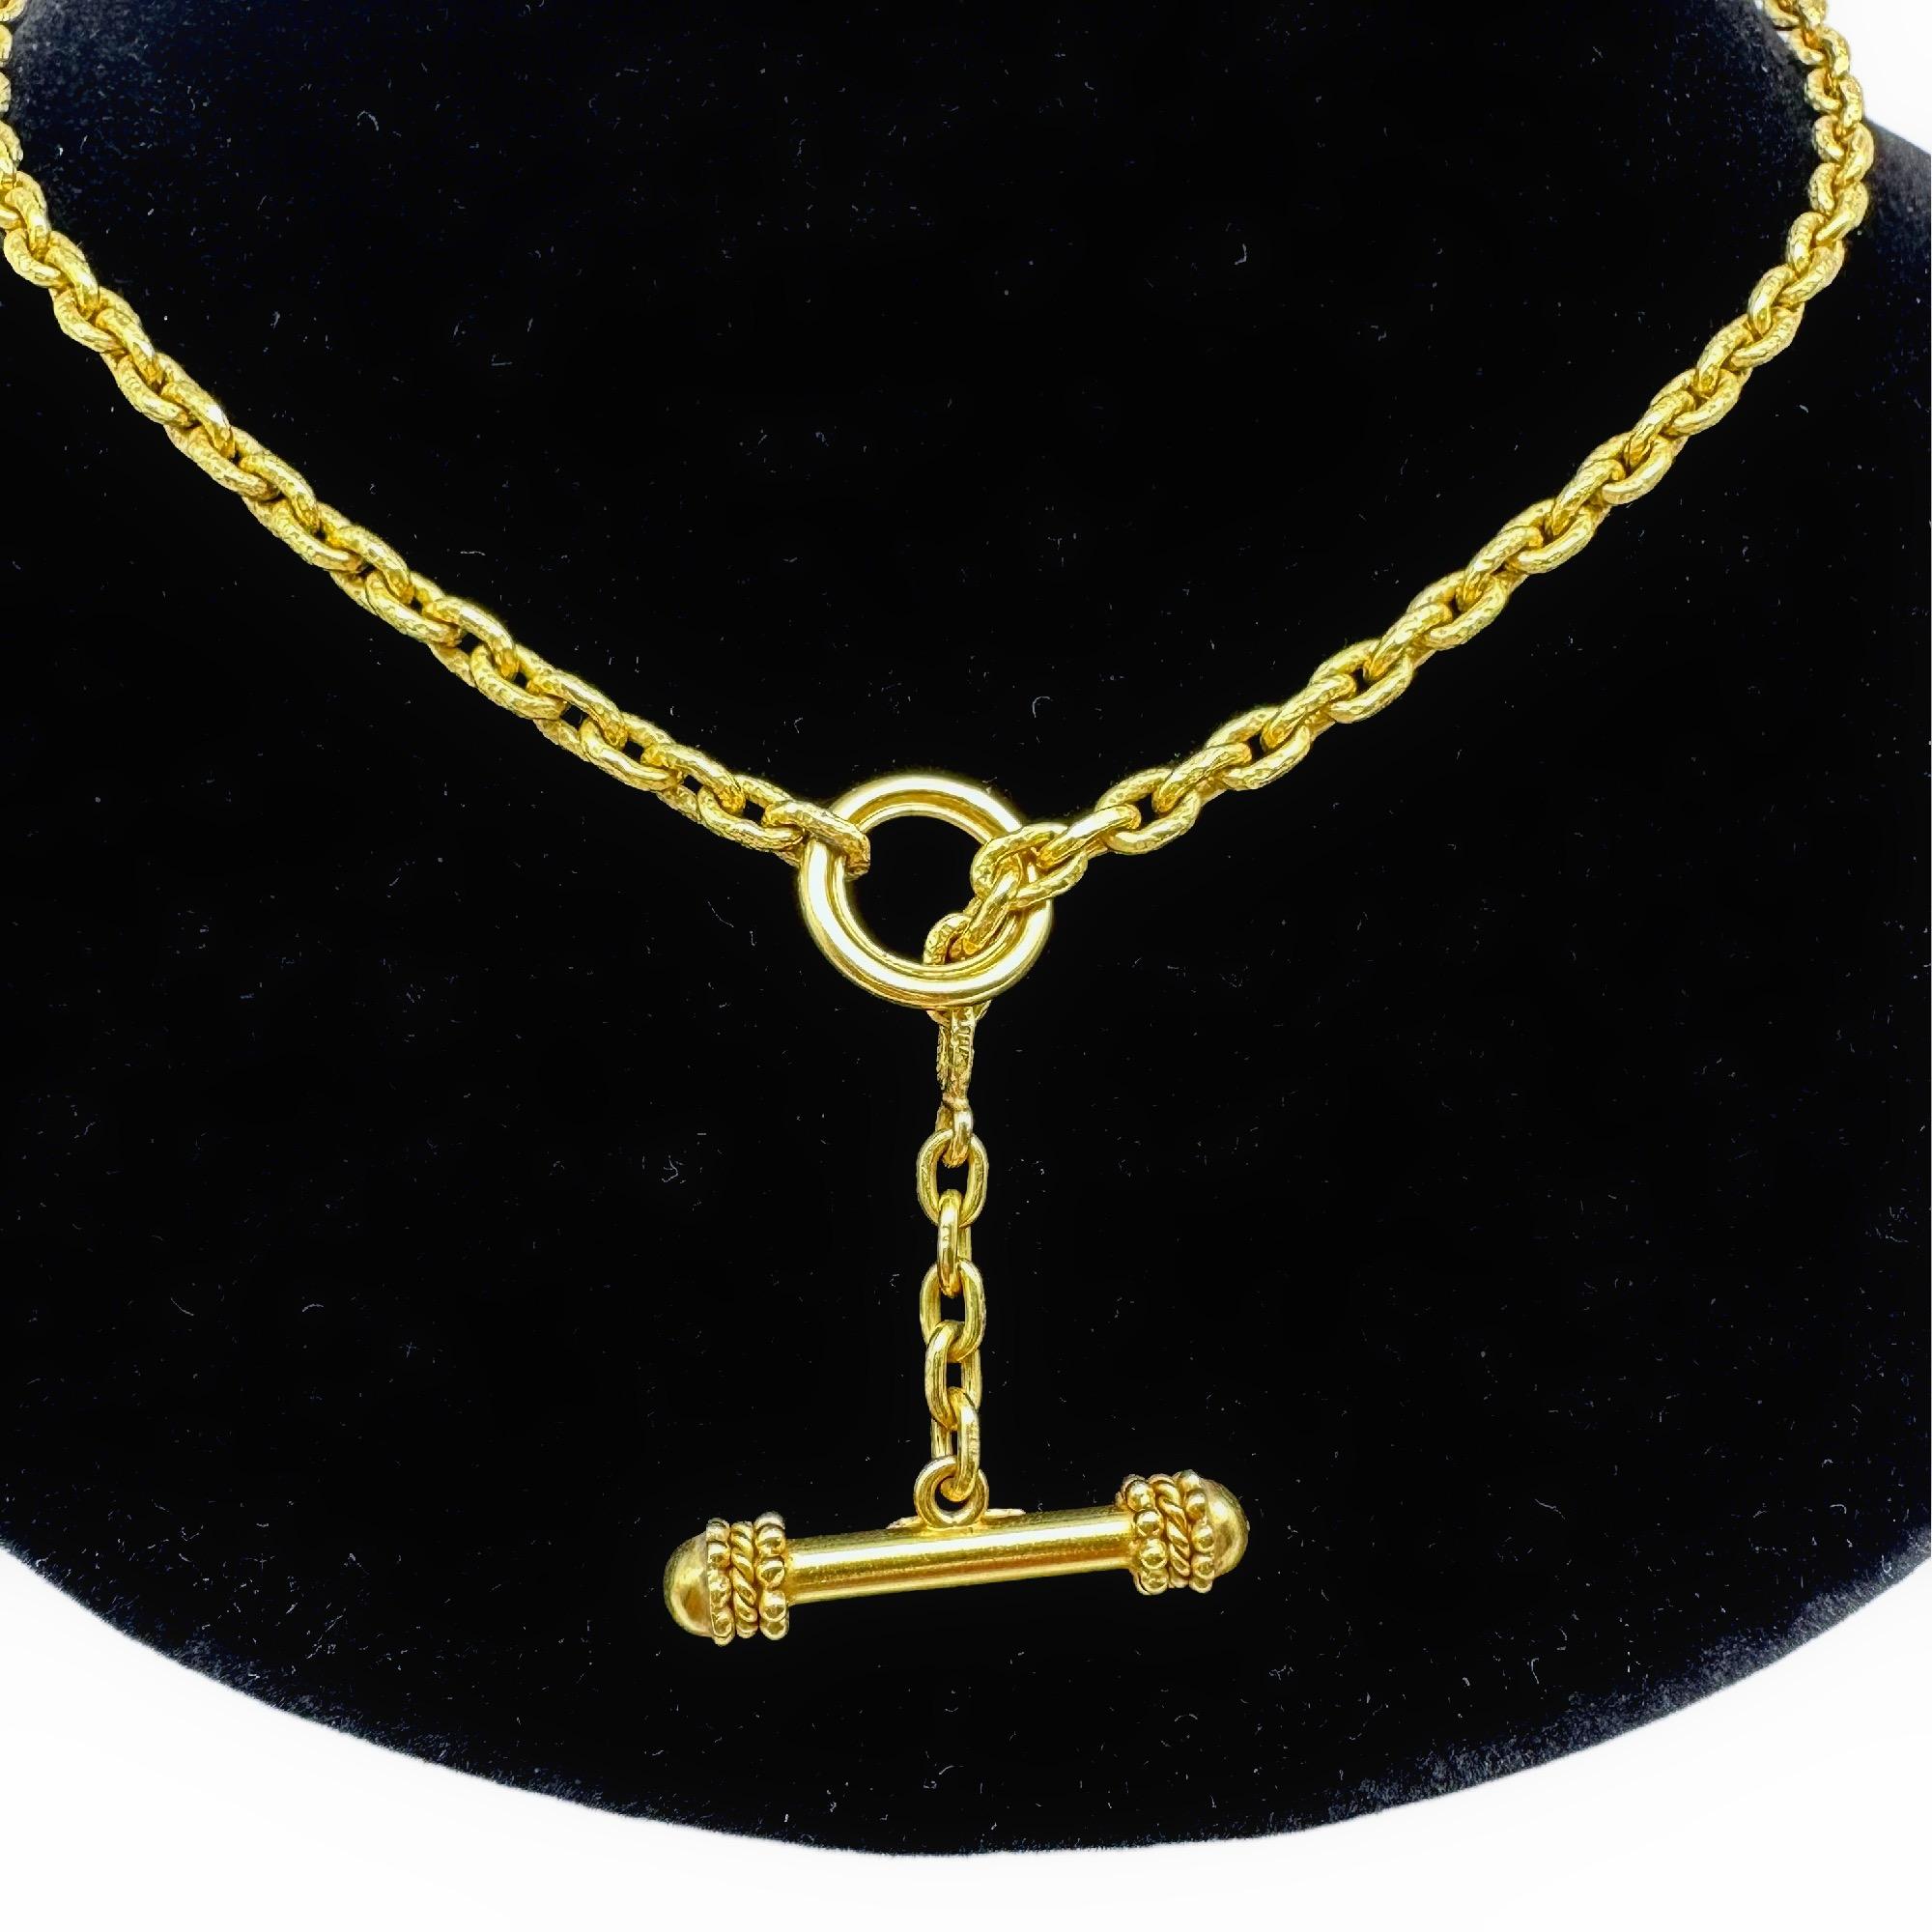 Elizabeth Locke Orvieta Hammered Gold Oval Link Necklace 19k Yg 1